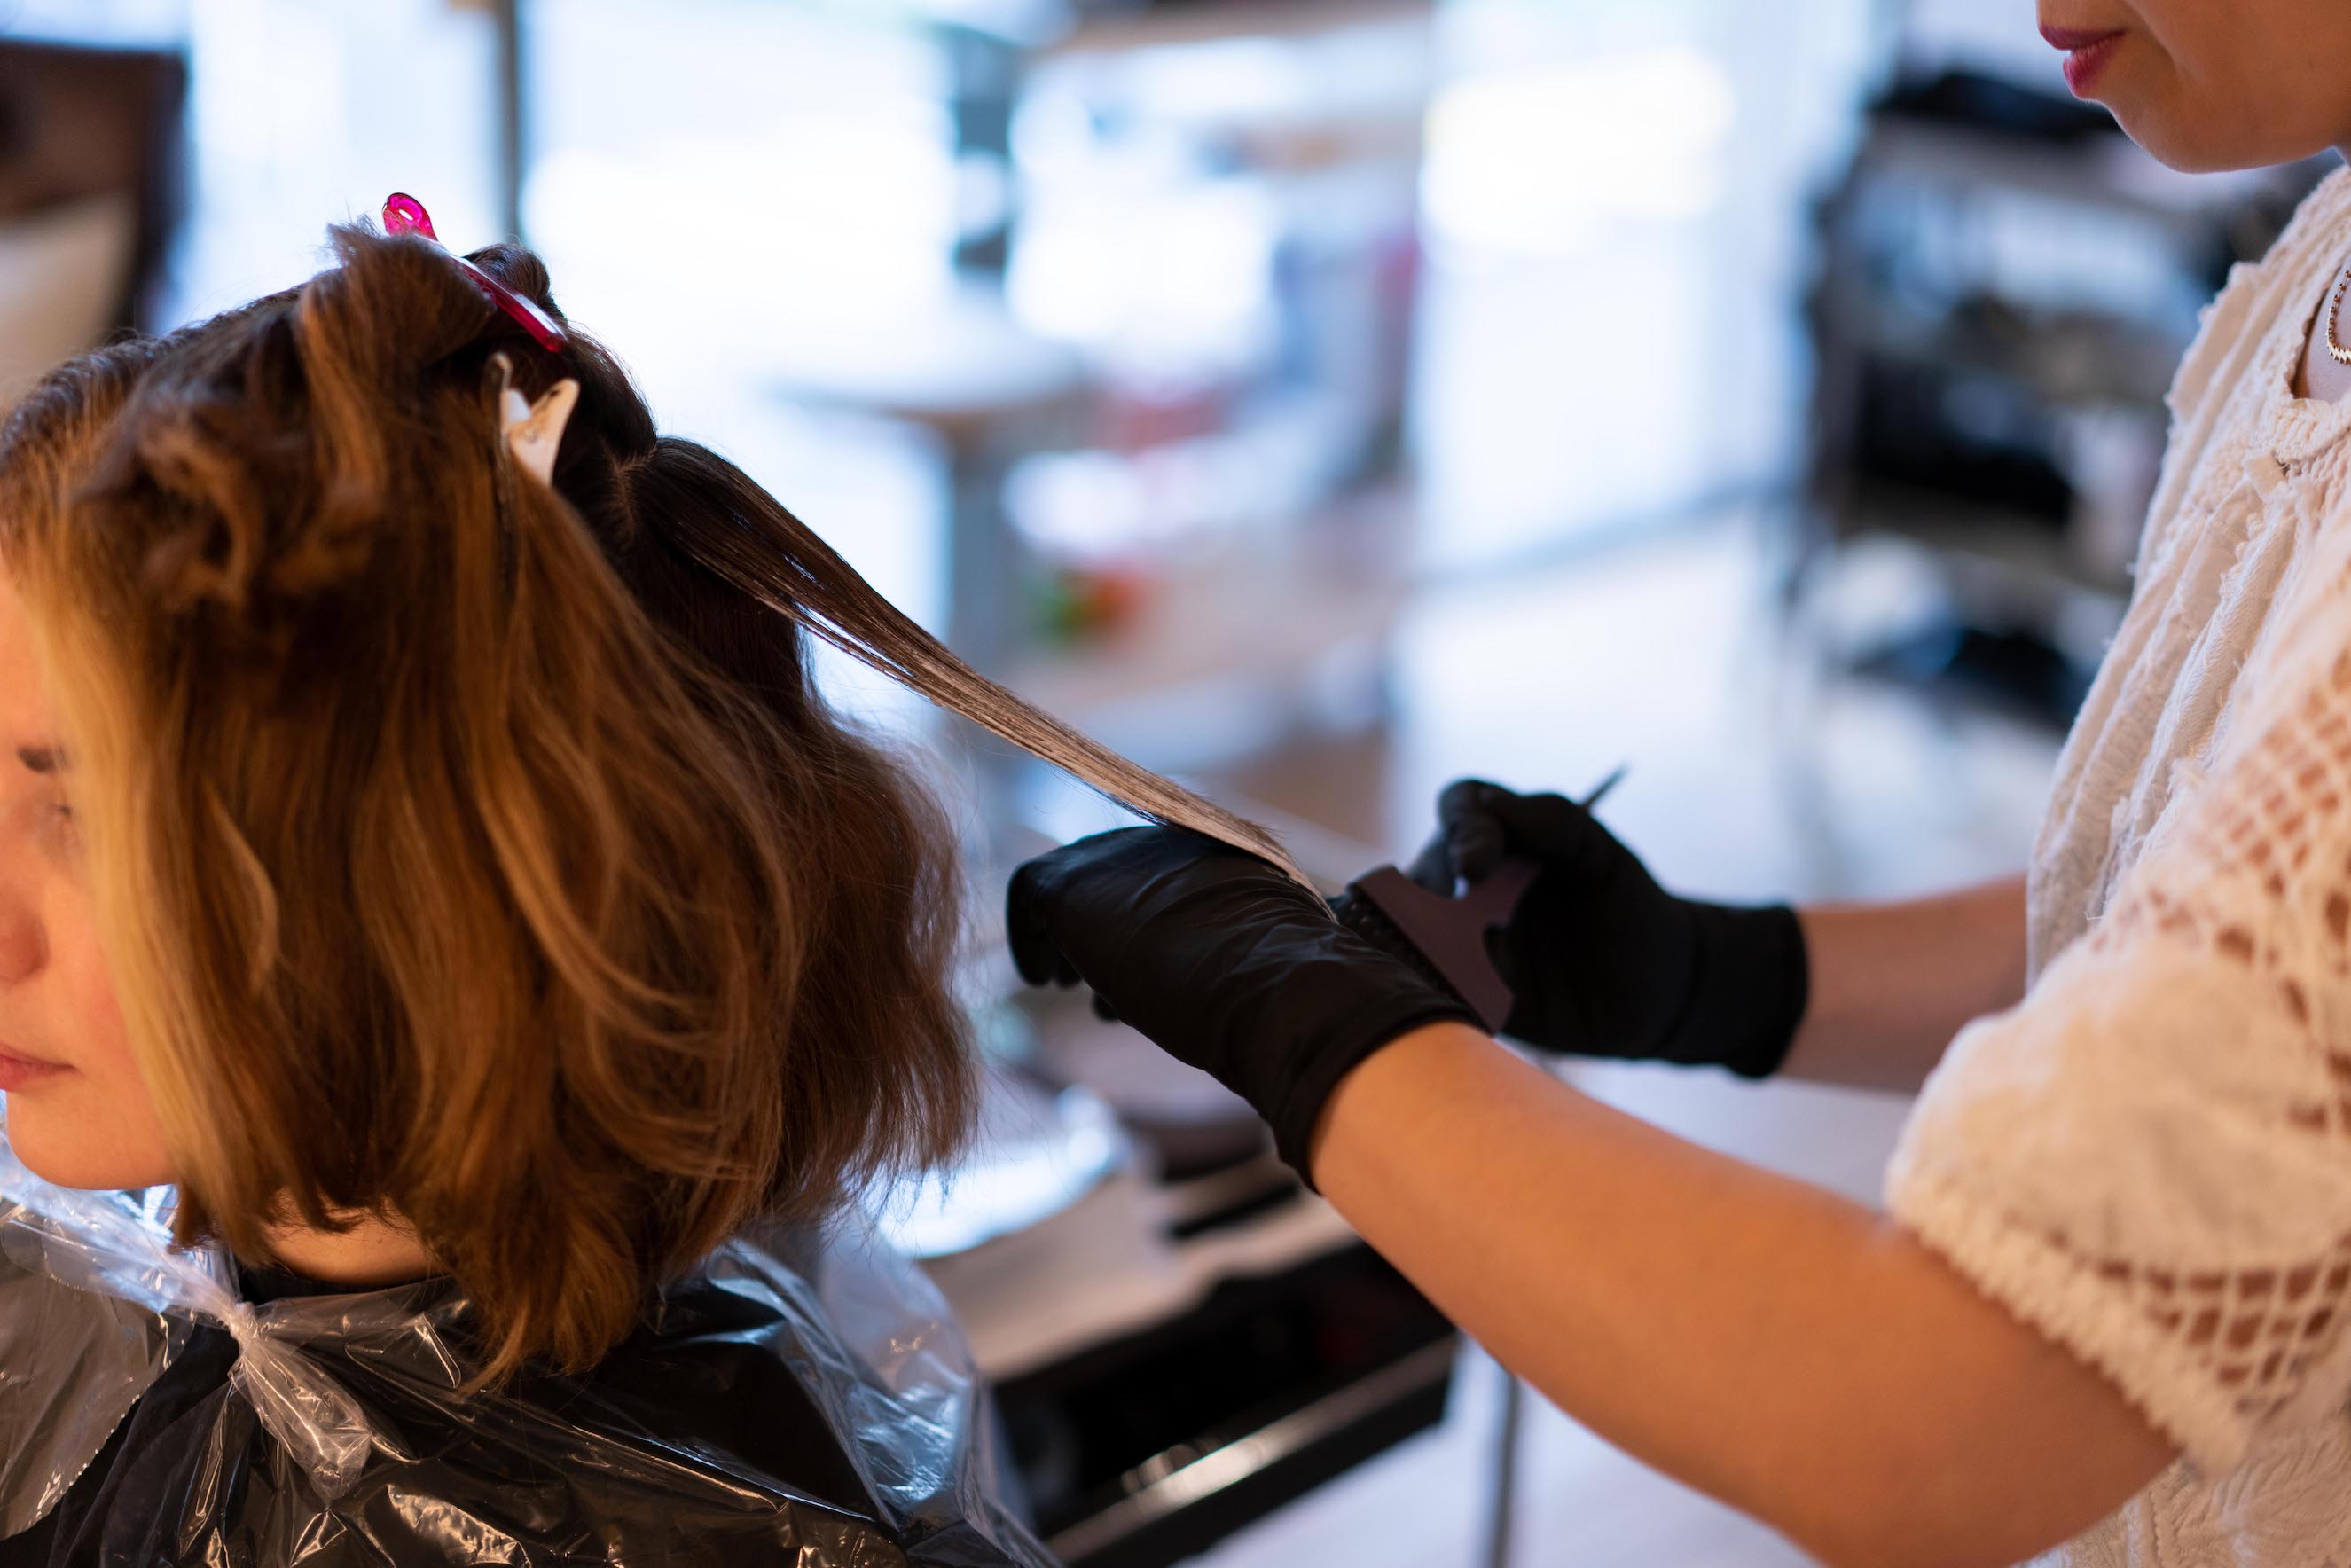  Phiên màu tóc bắt đầu với Ami áp dụng các chất tẩy trắng với màu tự do phương pháp Balayage, kỹ thuật làm nổi bật xu hướng nhất thời điểm hiện tại. Balayage được thực hiện trên các phần thấp hơn để làm sáng tóc mô hình của chúng tôi mà không đi lạc vào lãnh thổ stripy nổi bật. Ami sau đó kết hợp các kỹ thuật với một kỹ thuật làm nổi bật được gọi là Foilyage cẩn thận và có phương pháp quấn phần tóc Balayage sơn vào lá để khuếch đại sáng tóc. Foliyage cho Daira một cái đầu đẹp một cách tự nhiên điểm nổi bật trong khi nhận được lift hơn ra khỏi đầu, một cái gì đó mà không thể được thực hiện với chỉ đơn giản Balayage. 